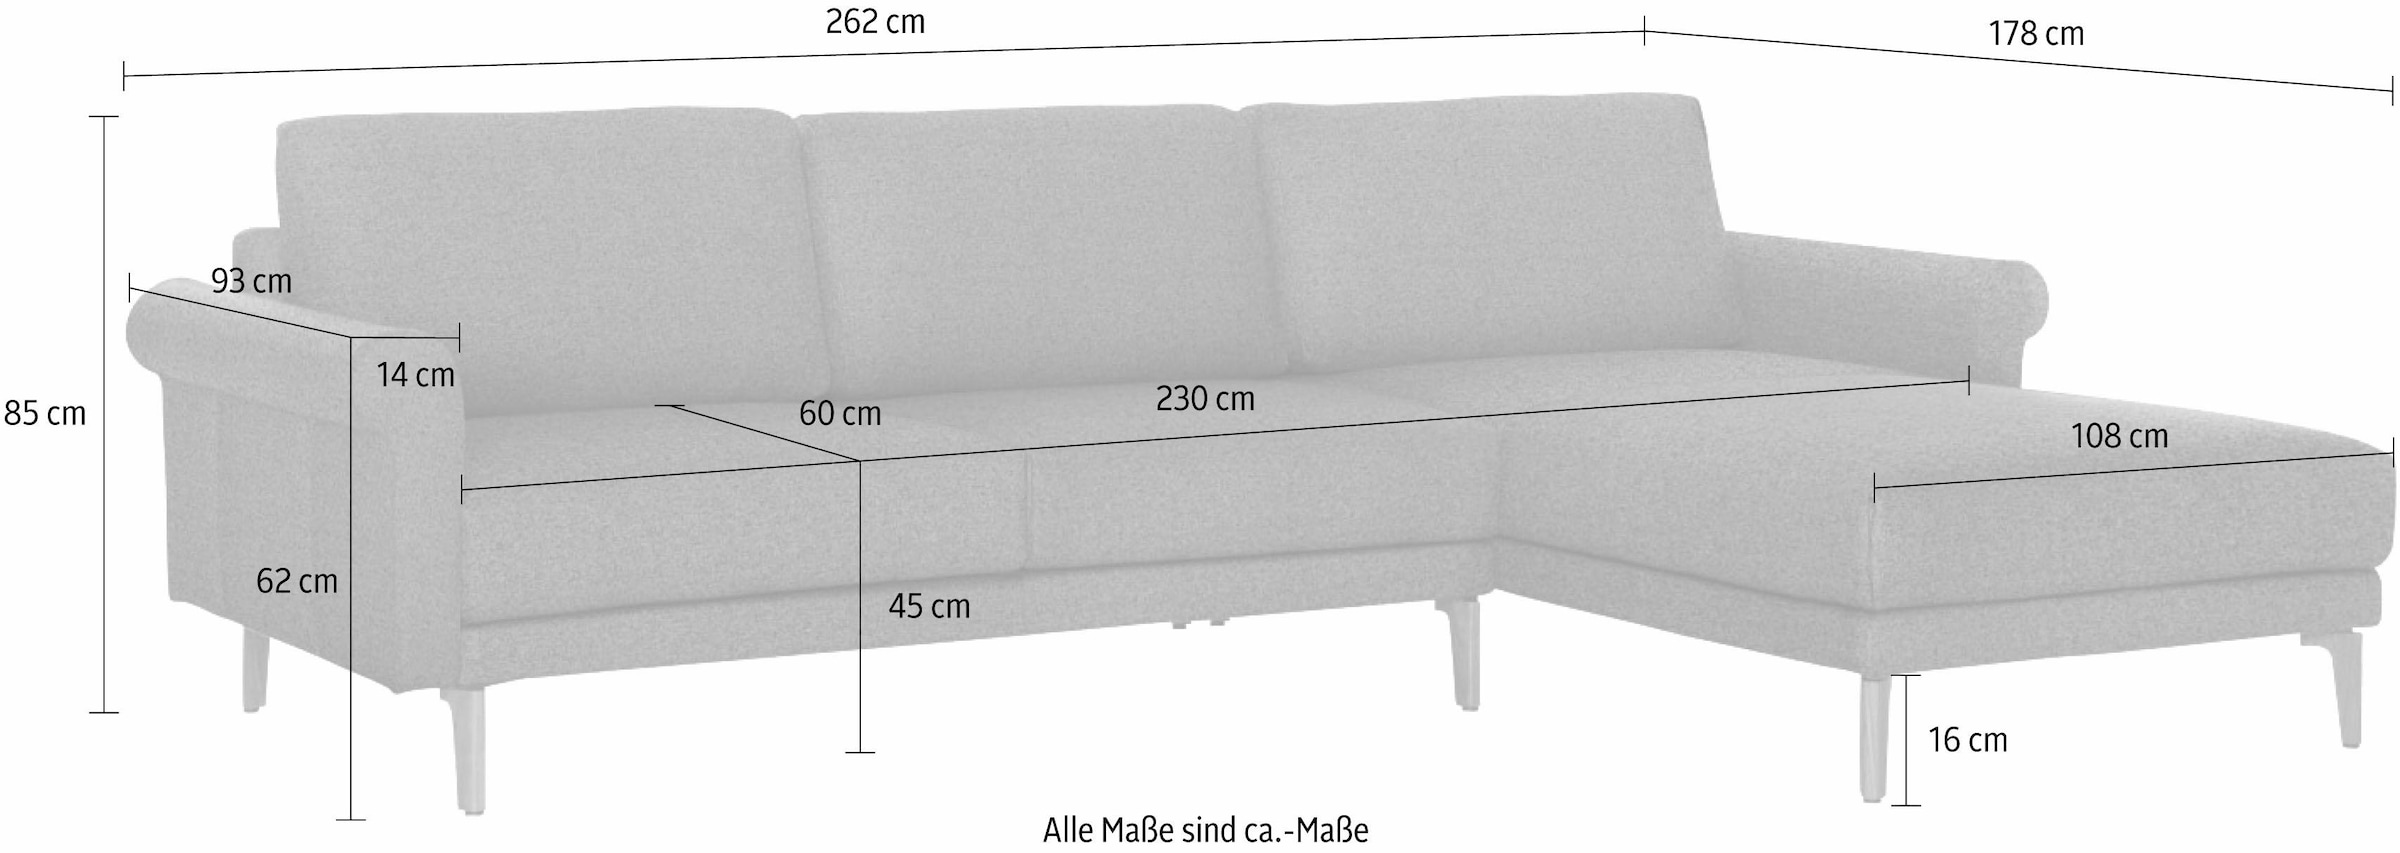 Landhaus, Breite Schnecke cm, bestellen sofa modern Fuß online »hs.450«, 262 Ecksofa Armlehne hülsta Nussbaum